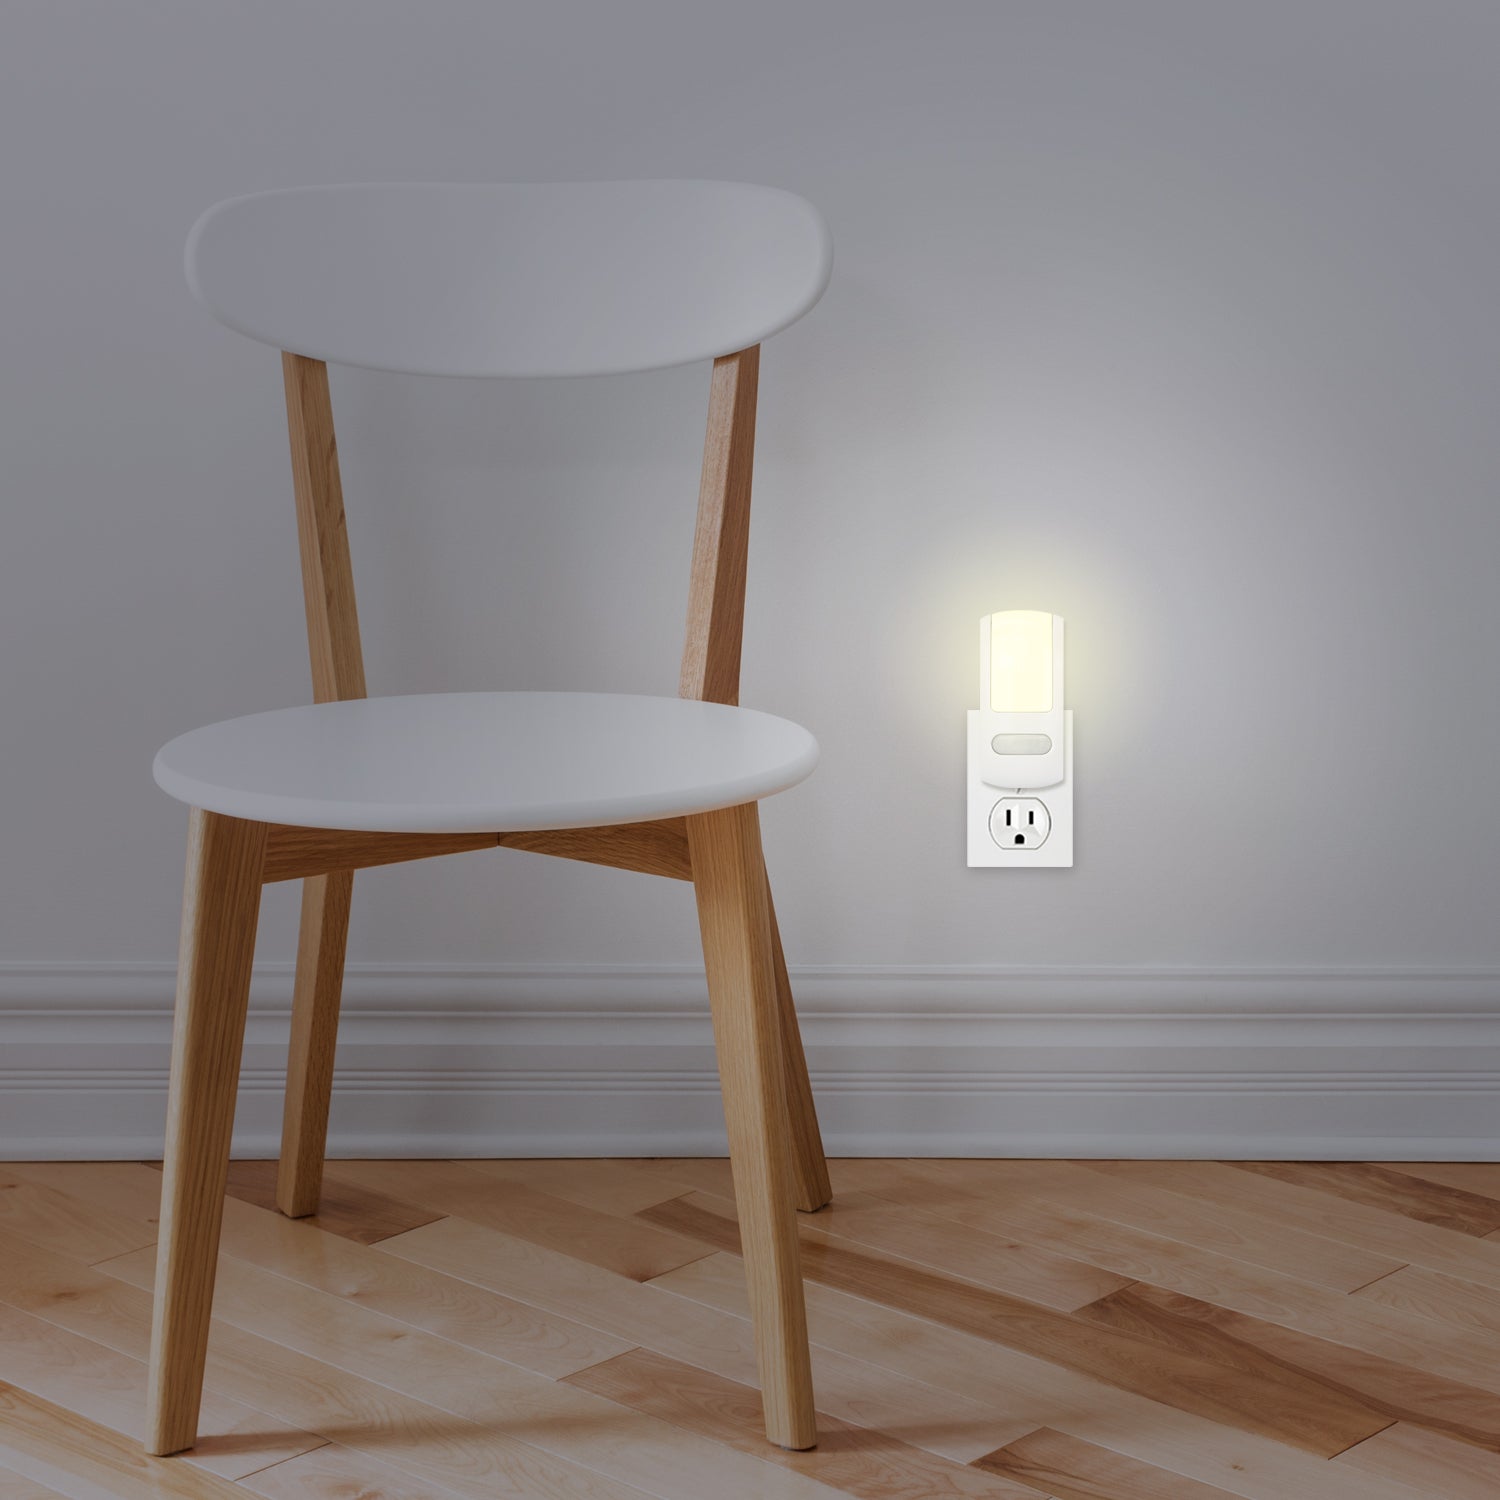 LED Motion Sensor Slim Night Light – White